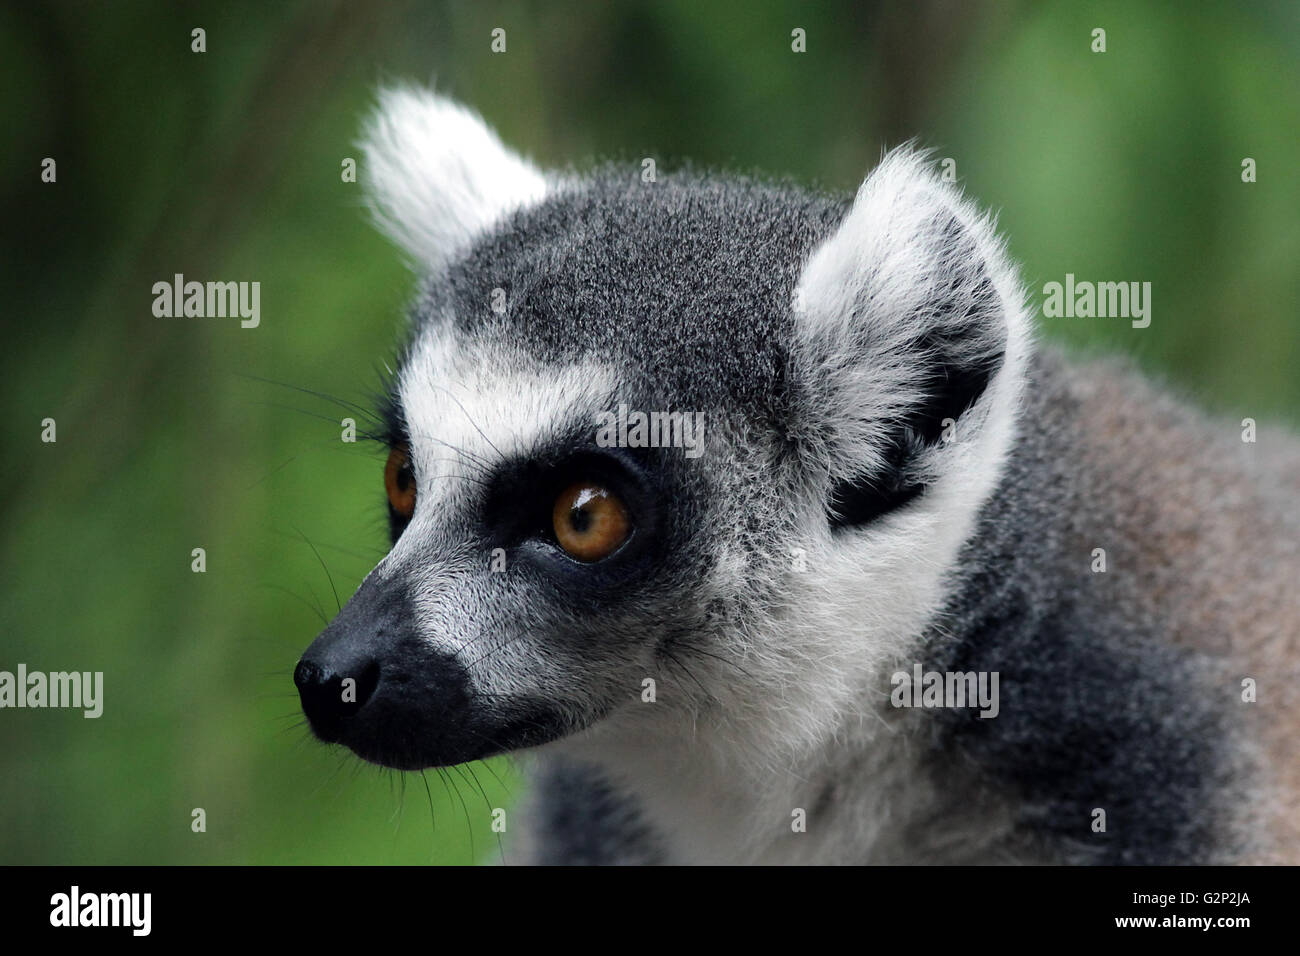 Ring-tailed lemur Lemur catta strepsirrhine Lemuridae primate le seul membre de la famille des lémuriens. Banque D'Images